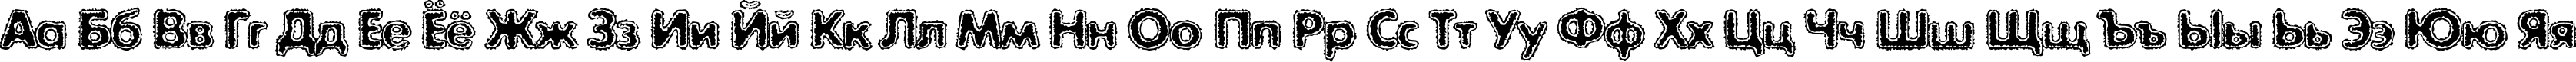 Пример написания русского алфавита шрифтом ExposureCMixTwo